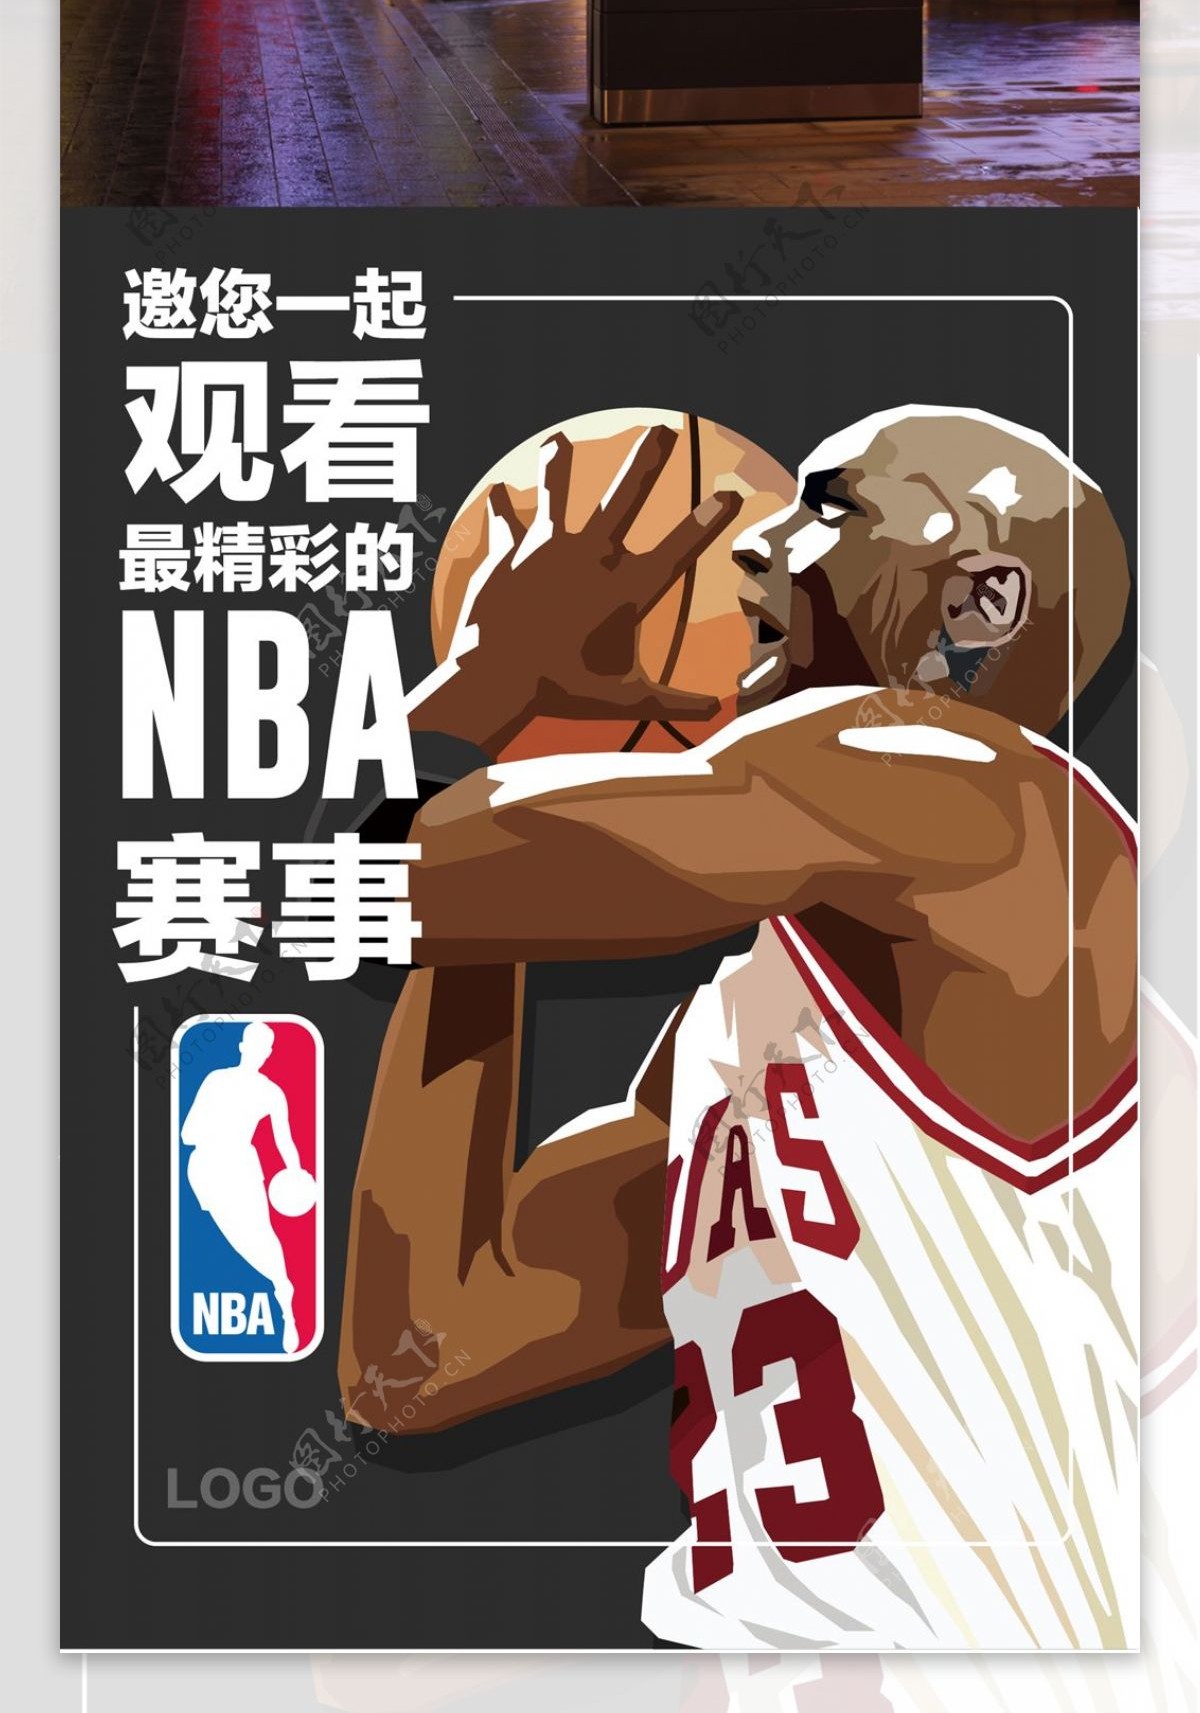 创意手绘插画NBA海报